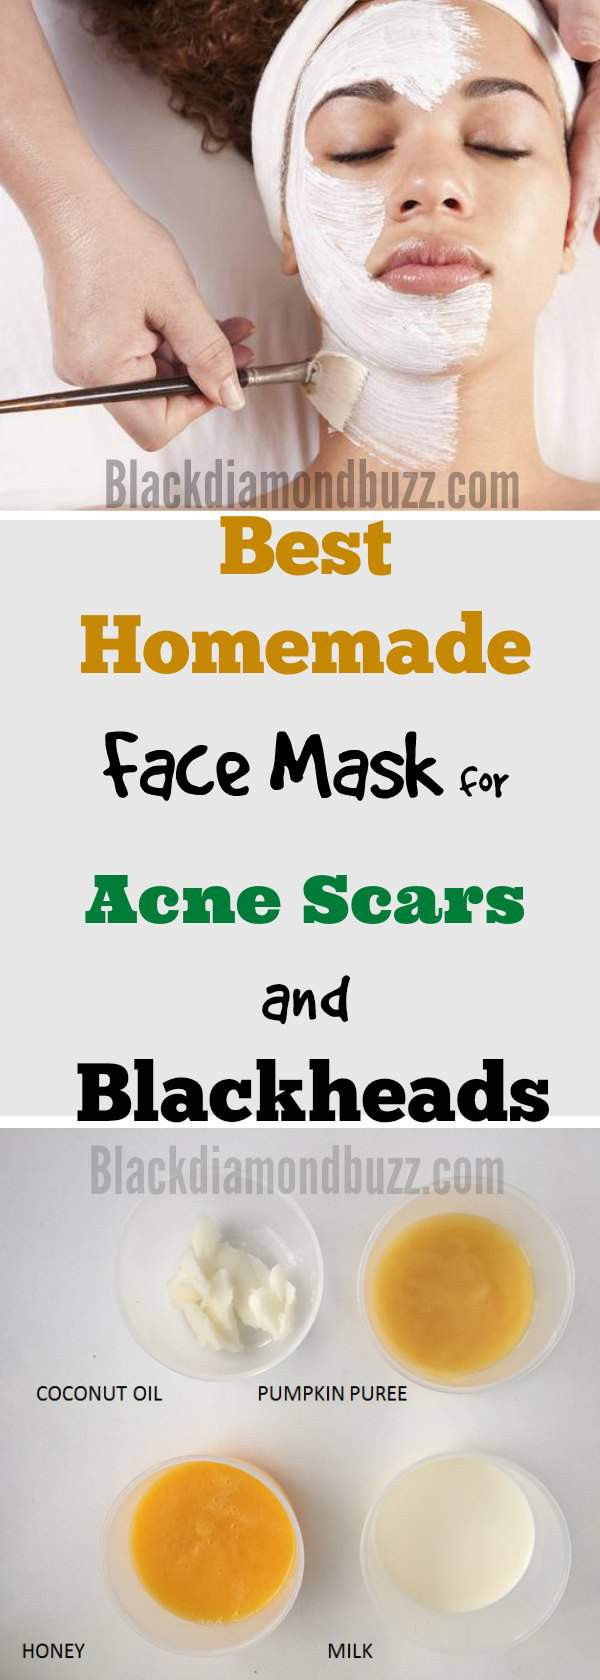 DIY Acne Scar Mask
 DIY Face Mask for Acne 7 Best Homemade Face Masks